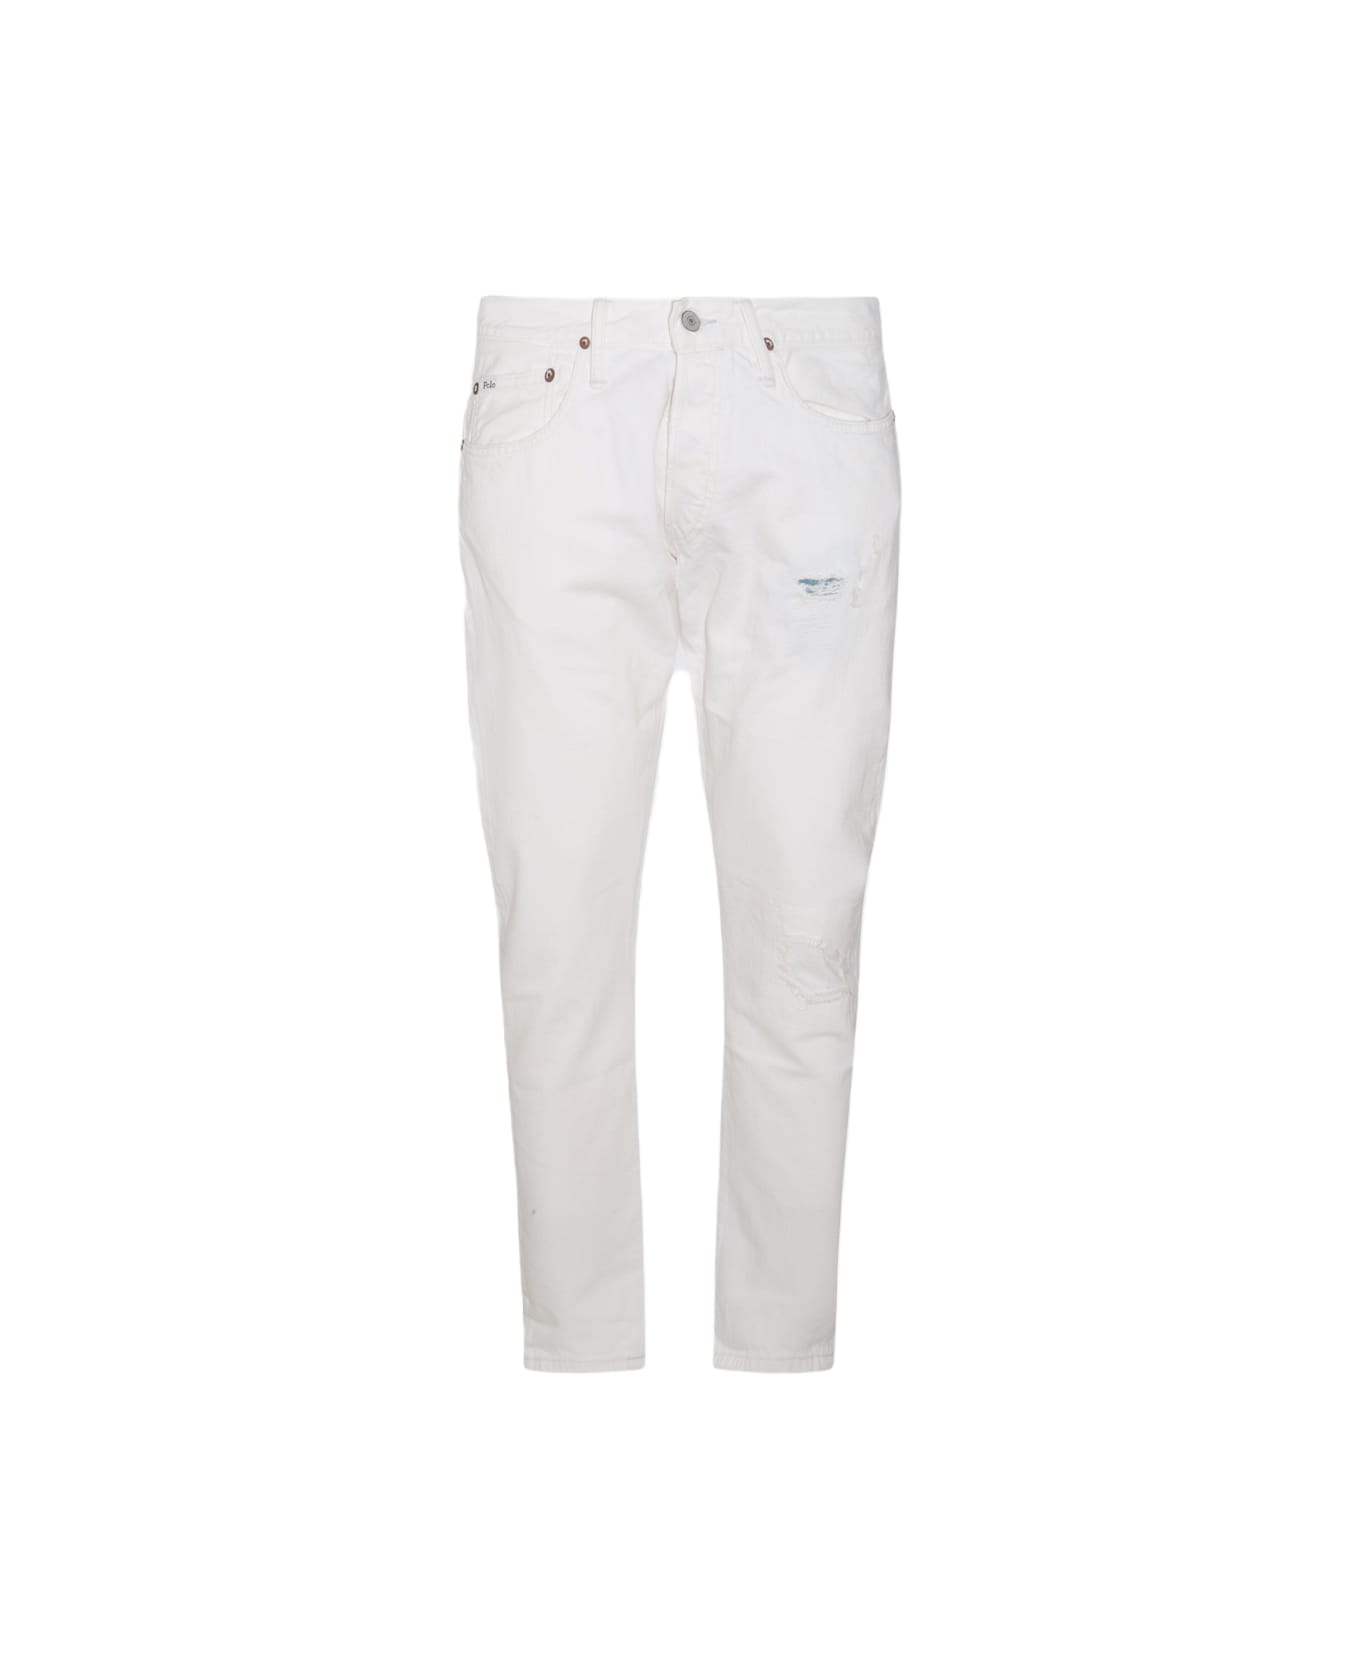 Polo Ralph Lauren White Cotton Denim Jeans - GLENGATE V2